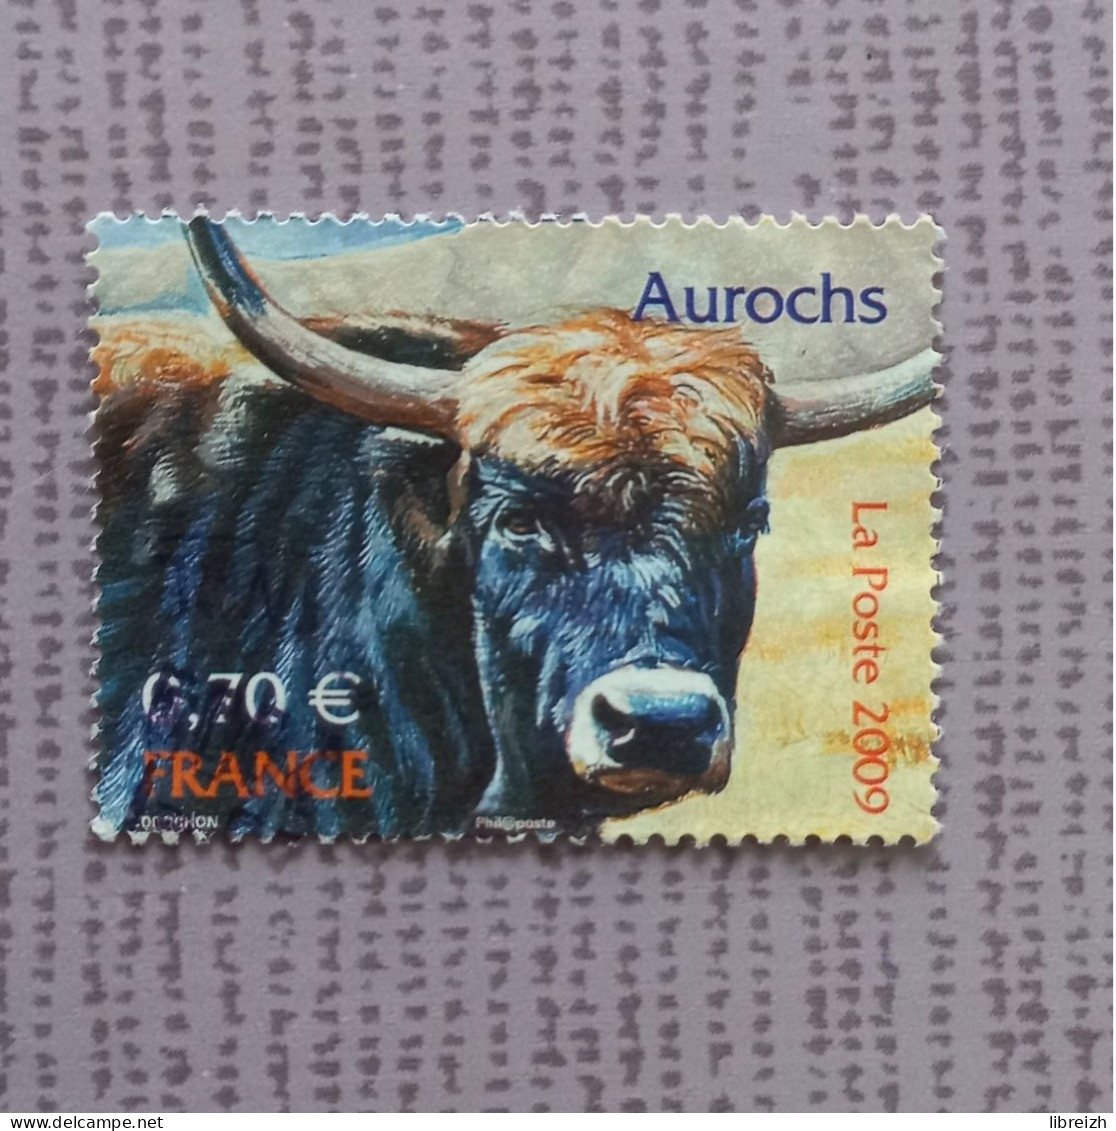 Aurochs  N° 4374 Année 2009 - Gebraucht